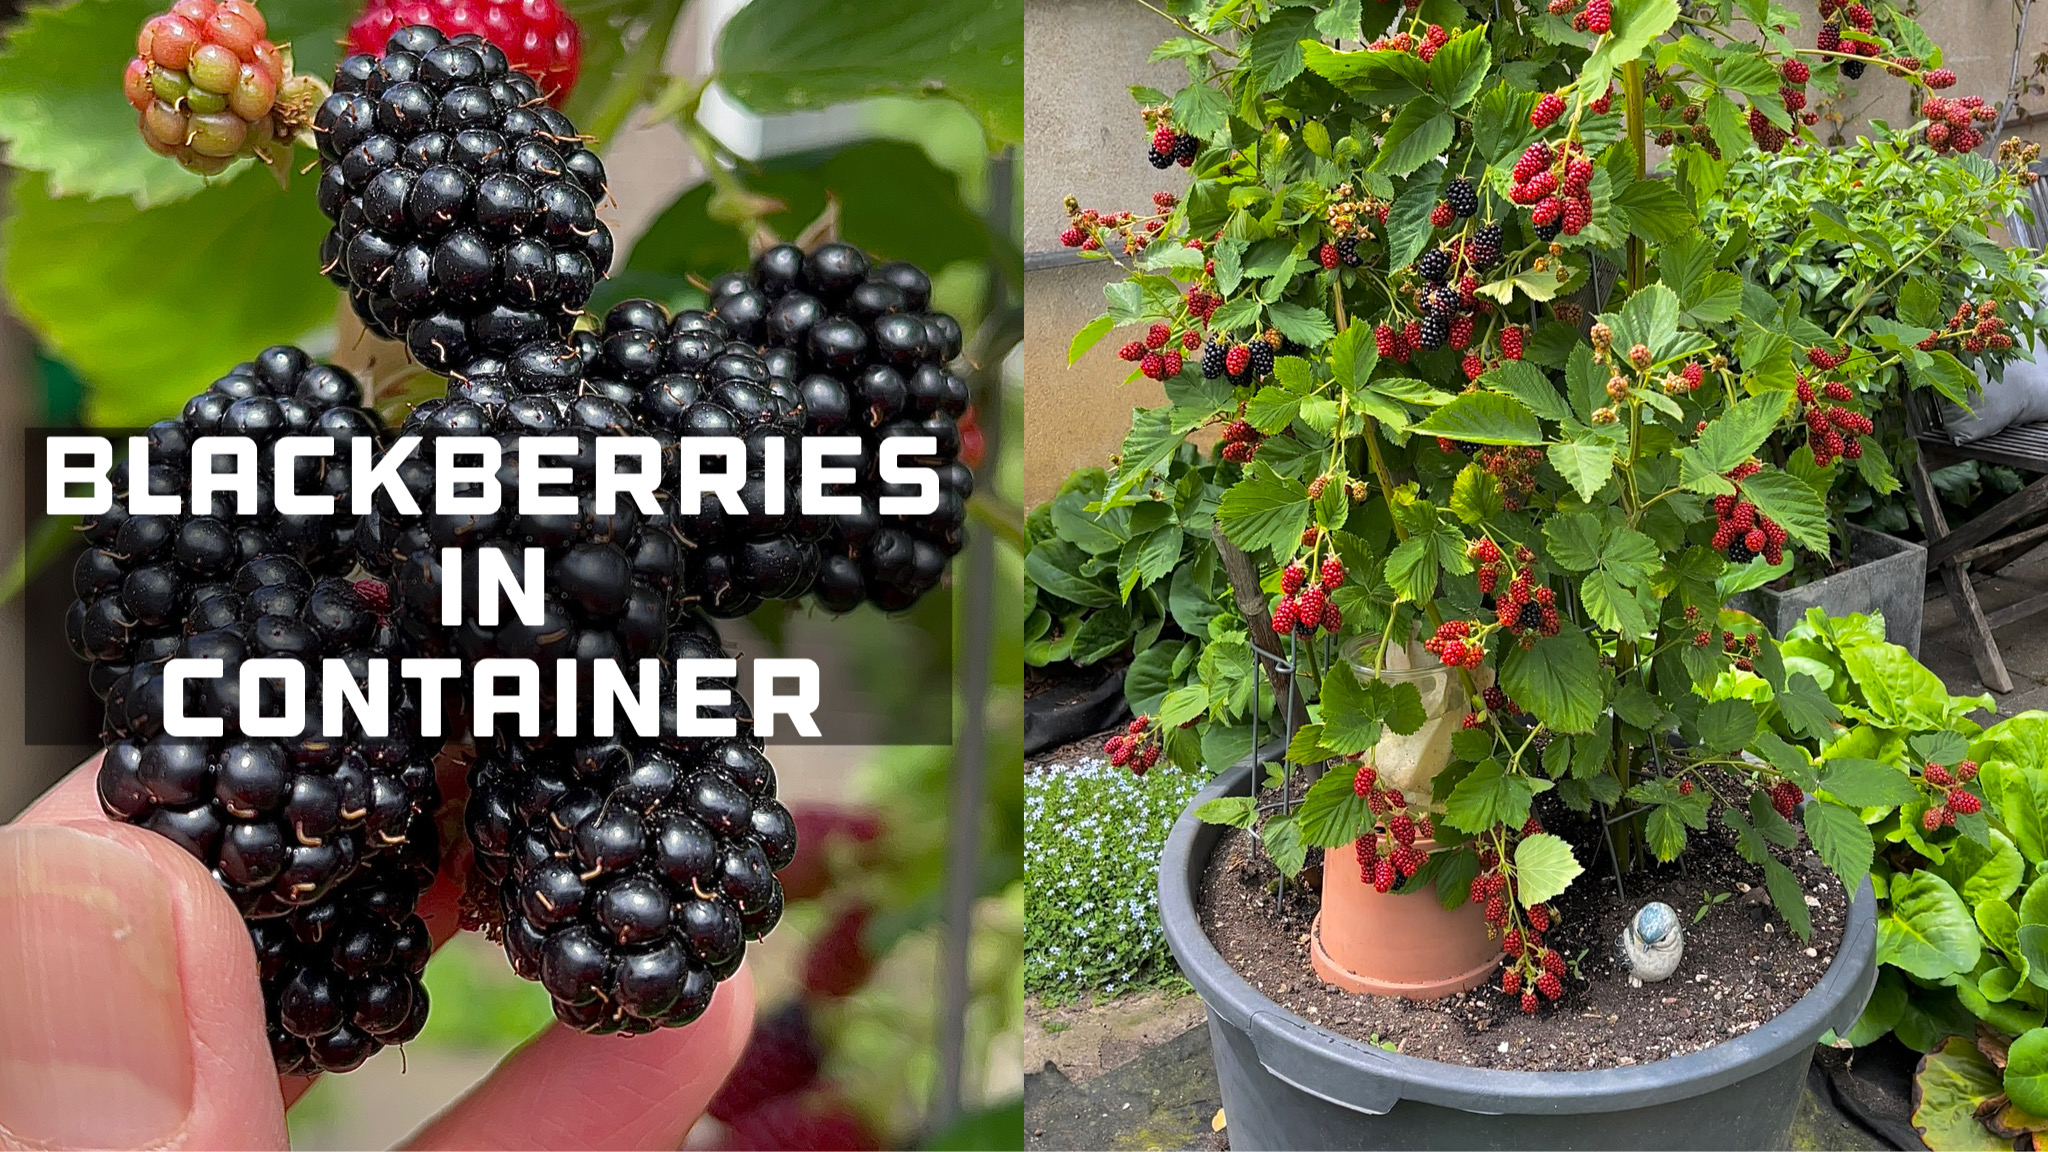 Growing Blackberries in Container